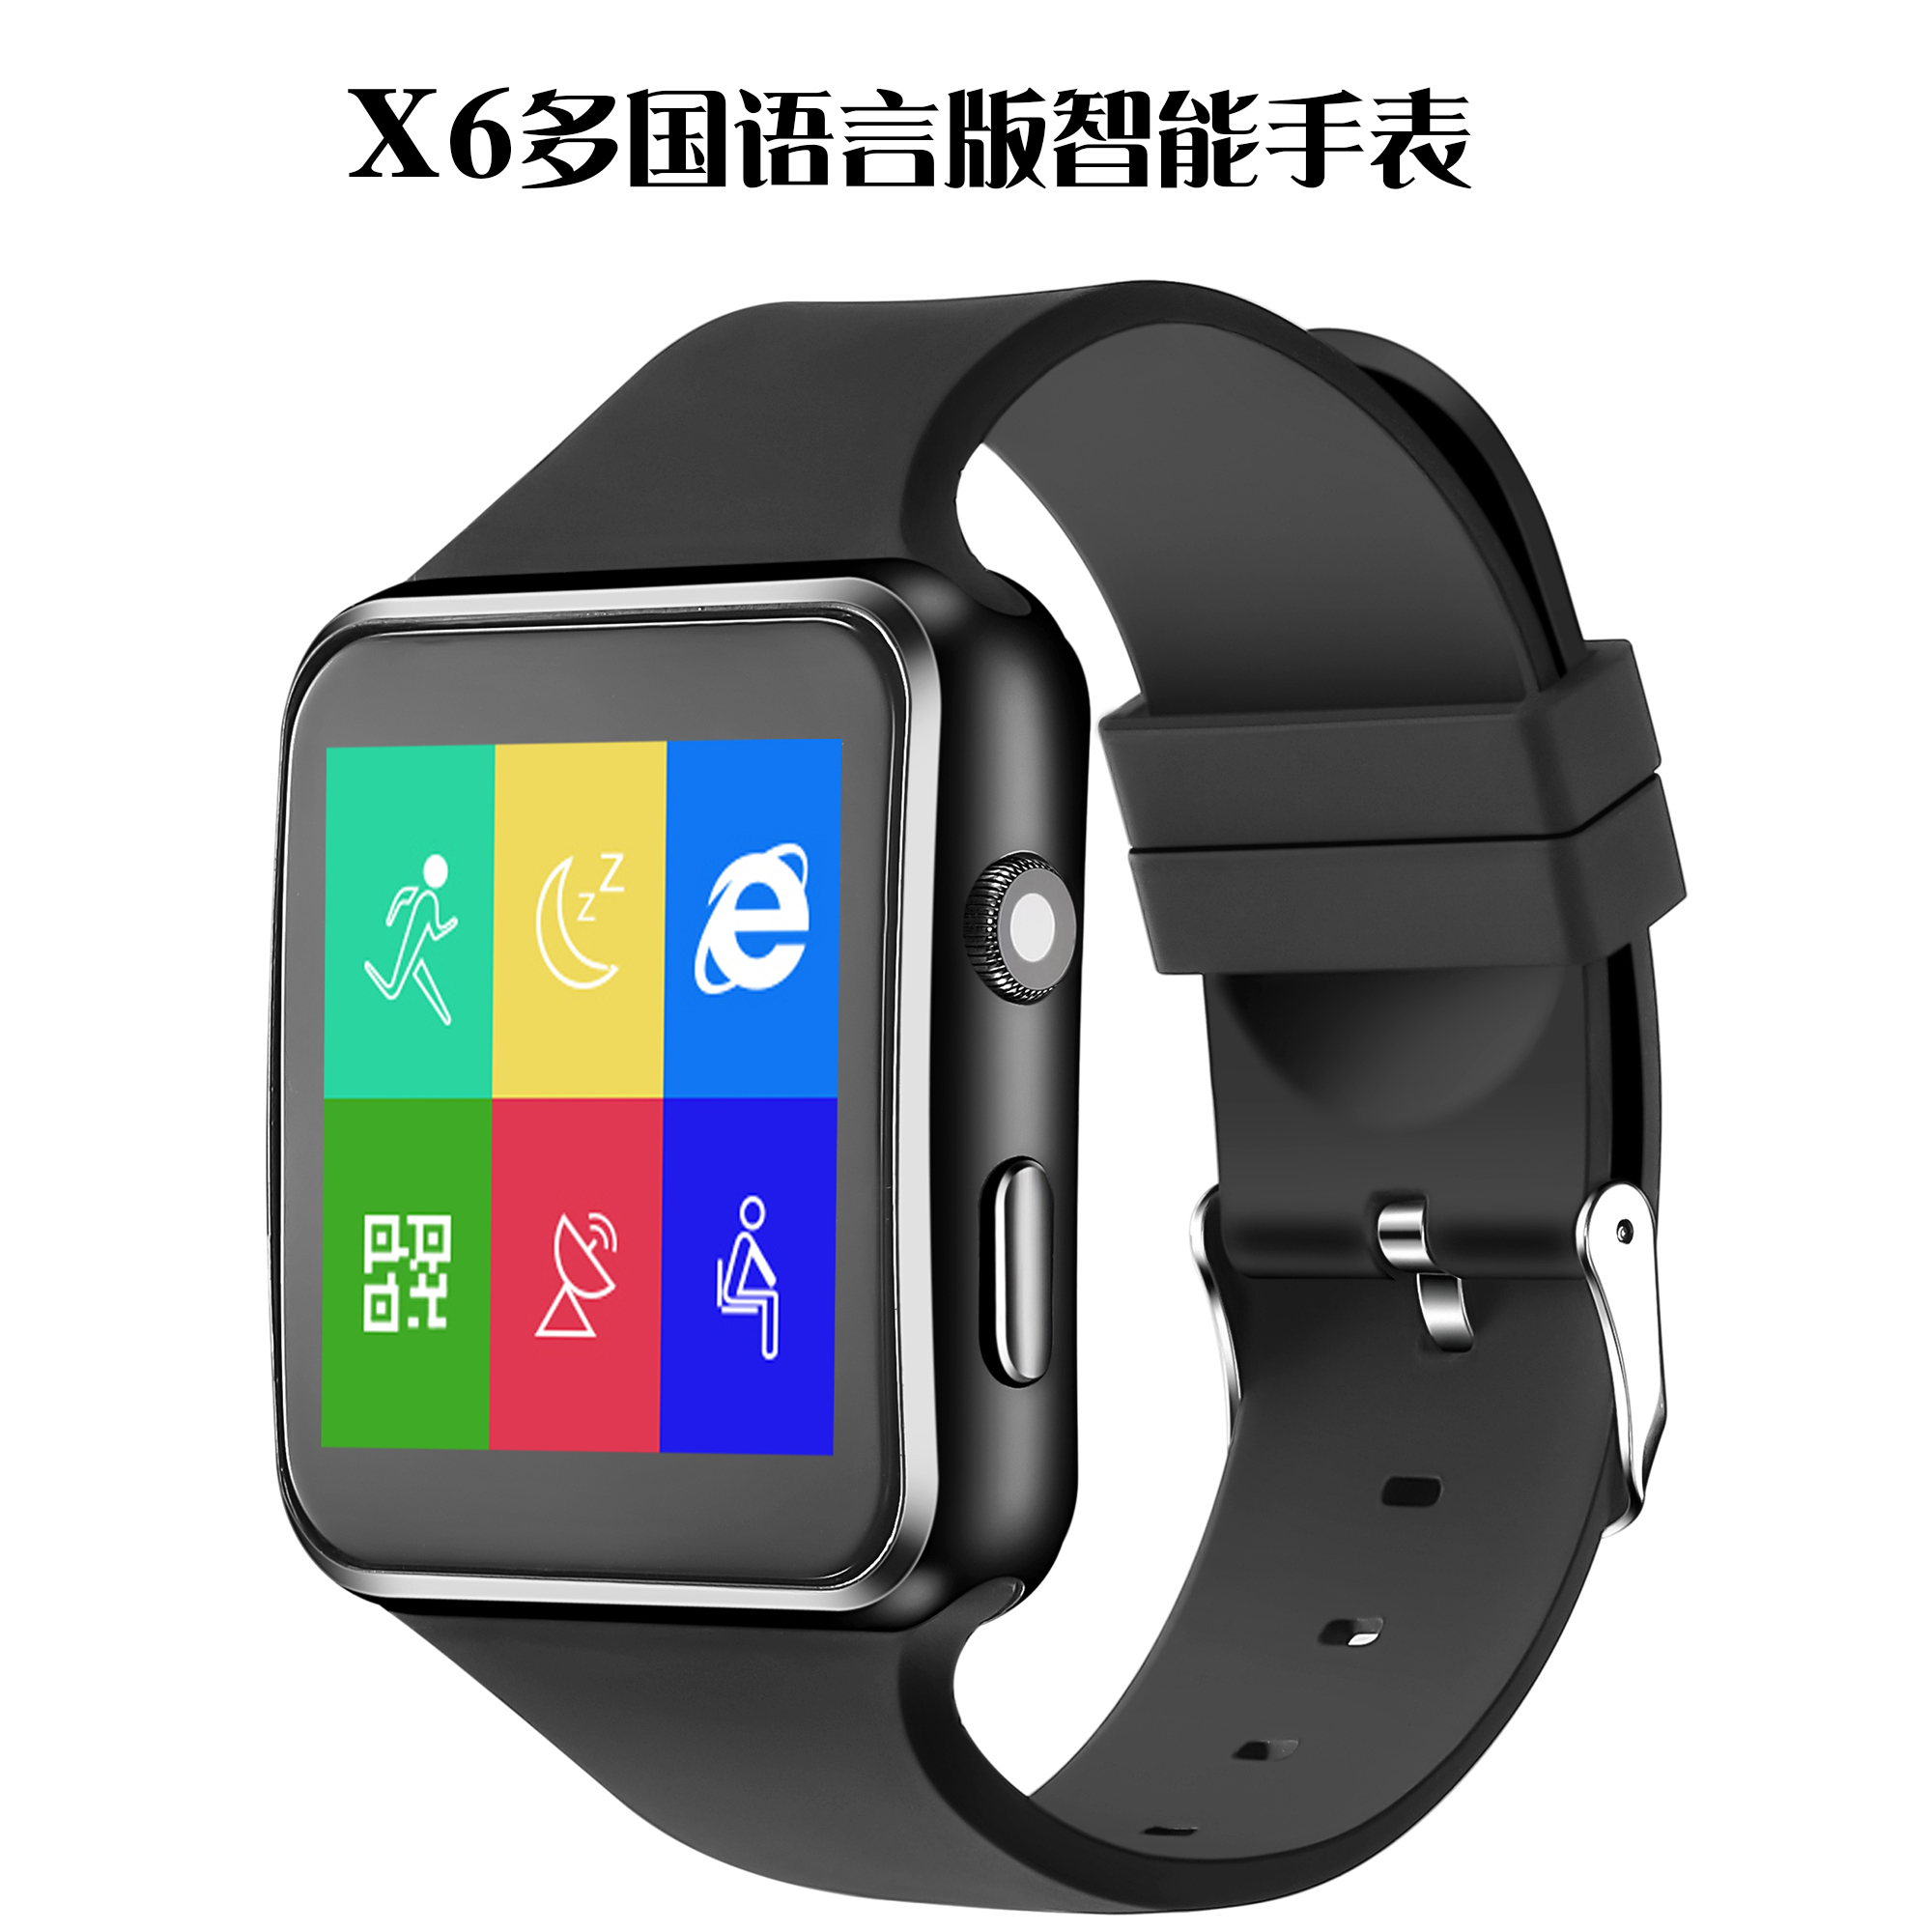 智能手表  X6蓝牙电话手表一件代发可监测健康运动计步插卡通话